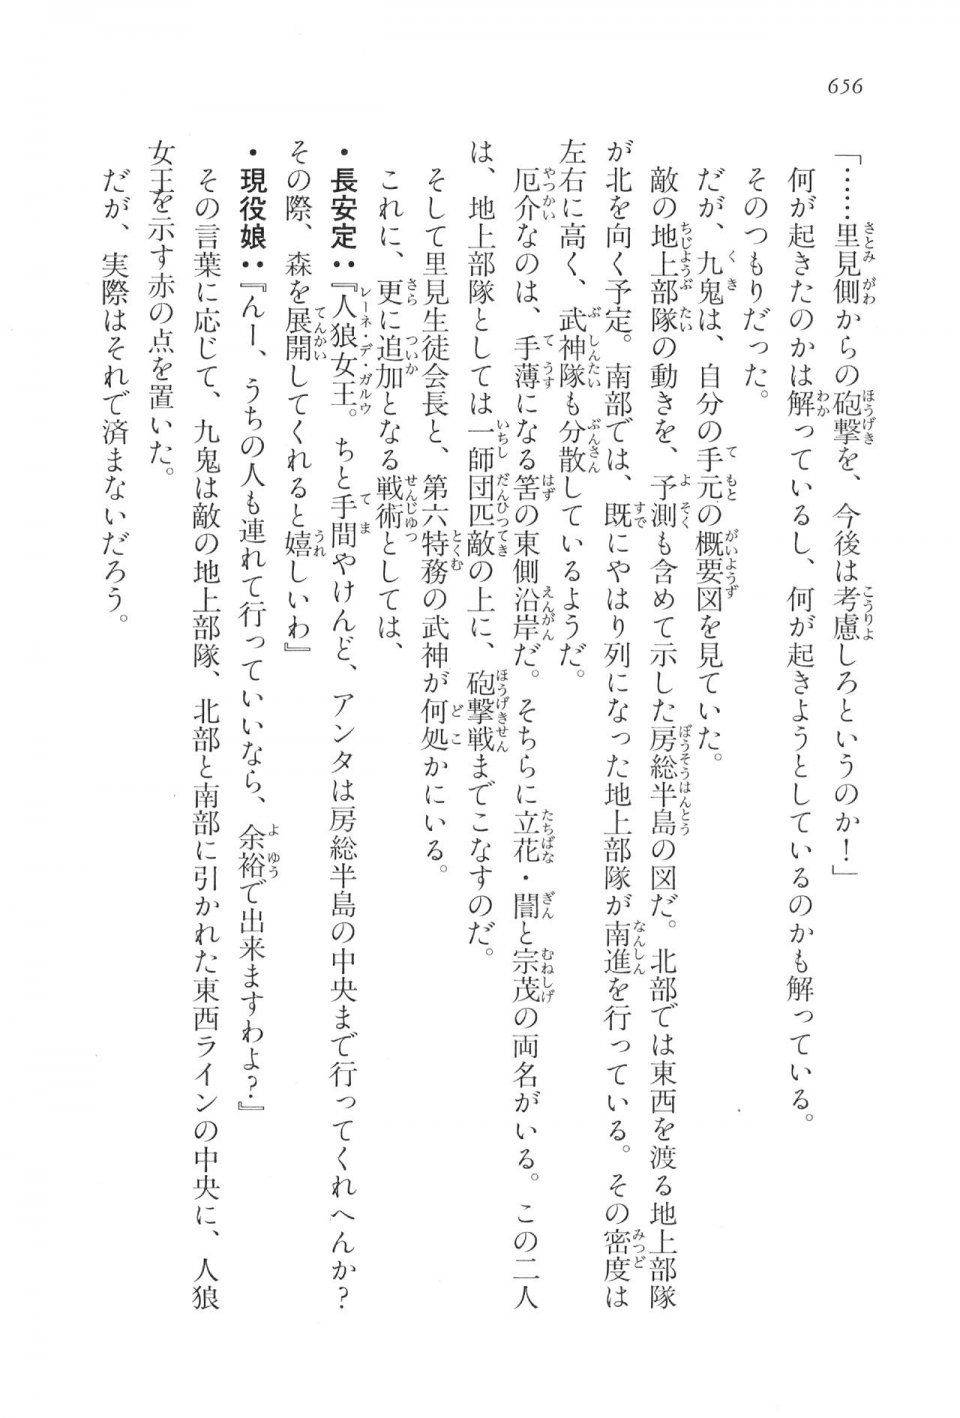 Kyoukai Senjou no Horizon LN Vol 17(7B) - Photo #658